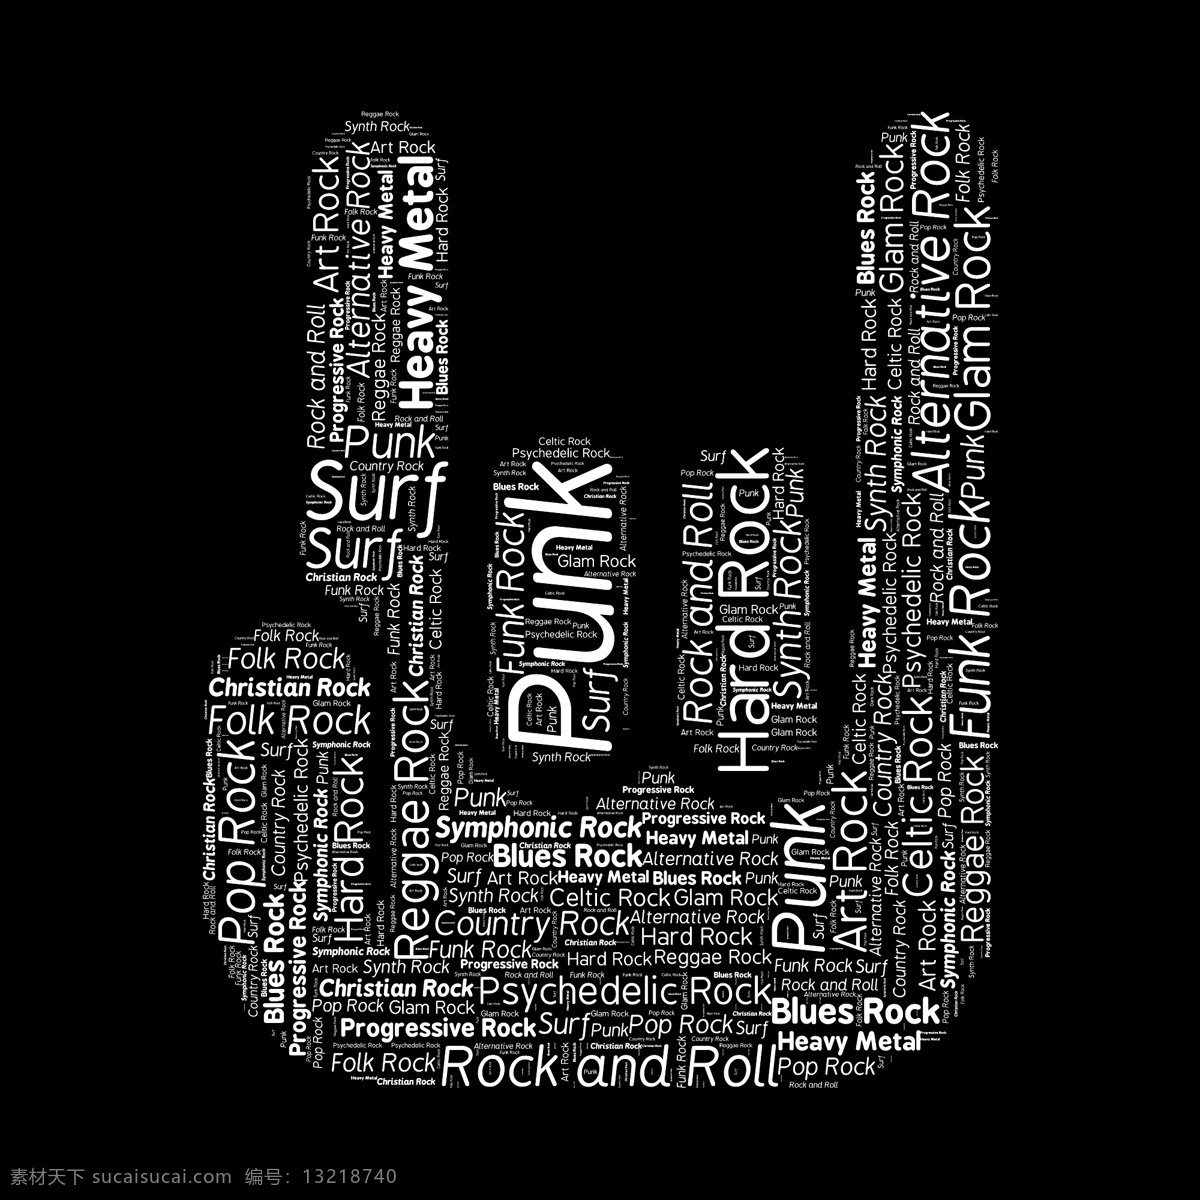 摇滚 摇滚乐 摇滚乐队 手势 字母 手形 手指 rock 音乐 摇滚海报 摇滚标志 舞蹈音乐 文化艺术 黑色